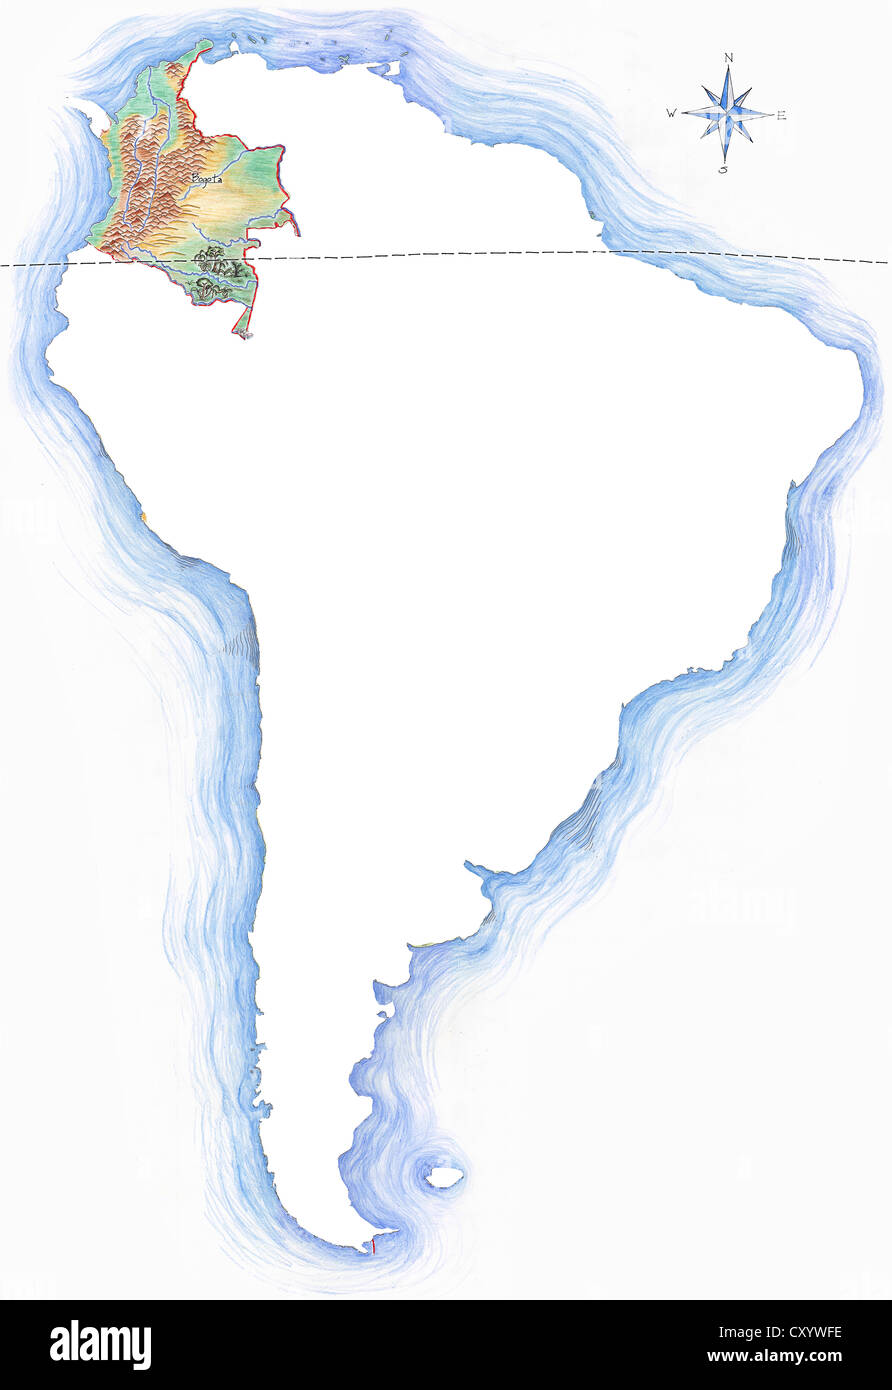 Sehr detaillierte handgezeichnete Karte von Kolumbien innerhalb der Umrisse von Südamerika mit einer Windrose und der Äquator Stockfoto